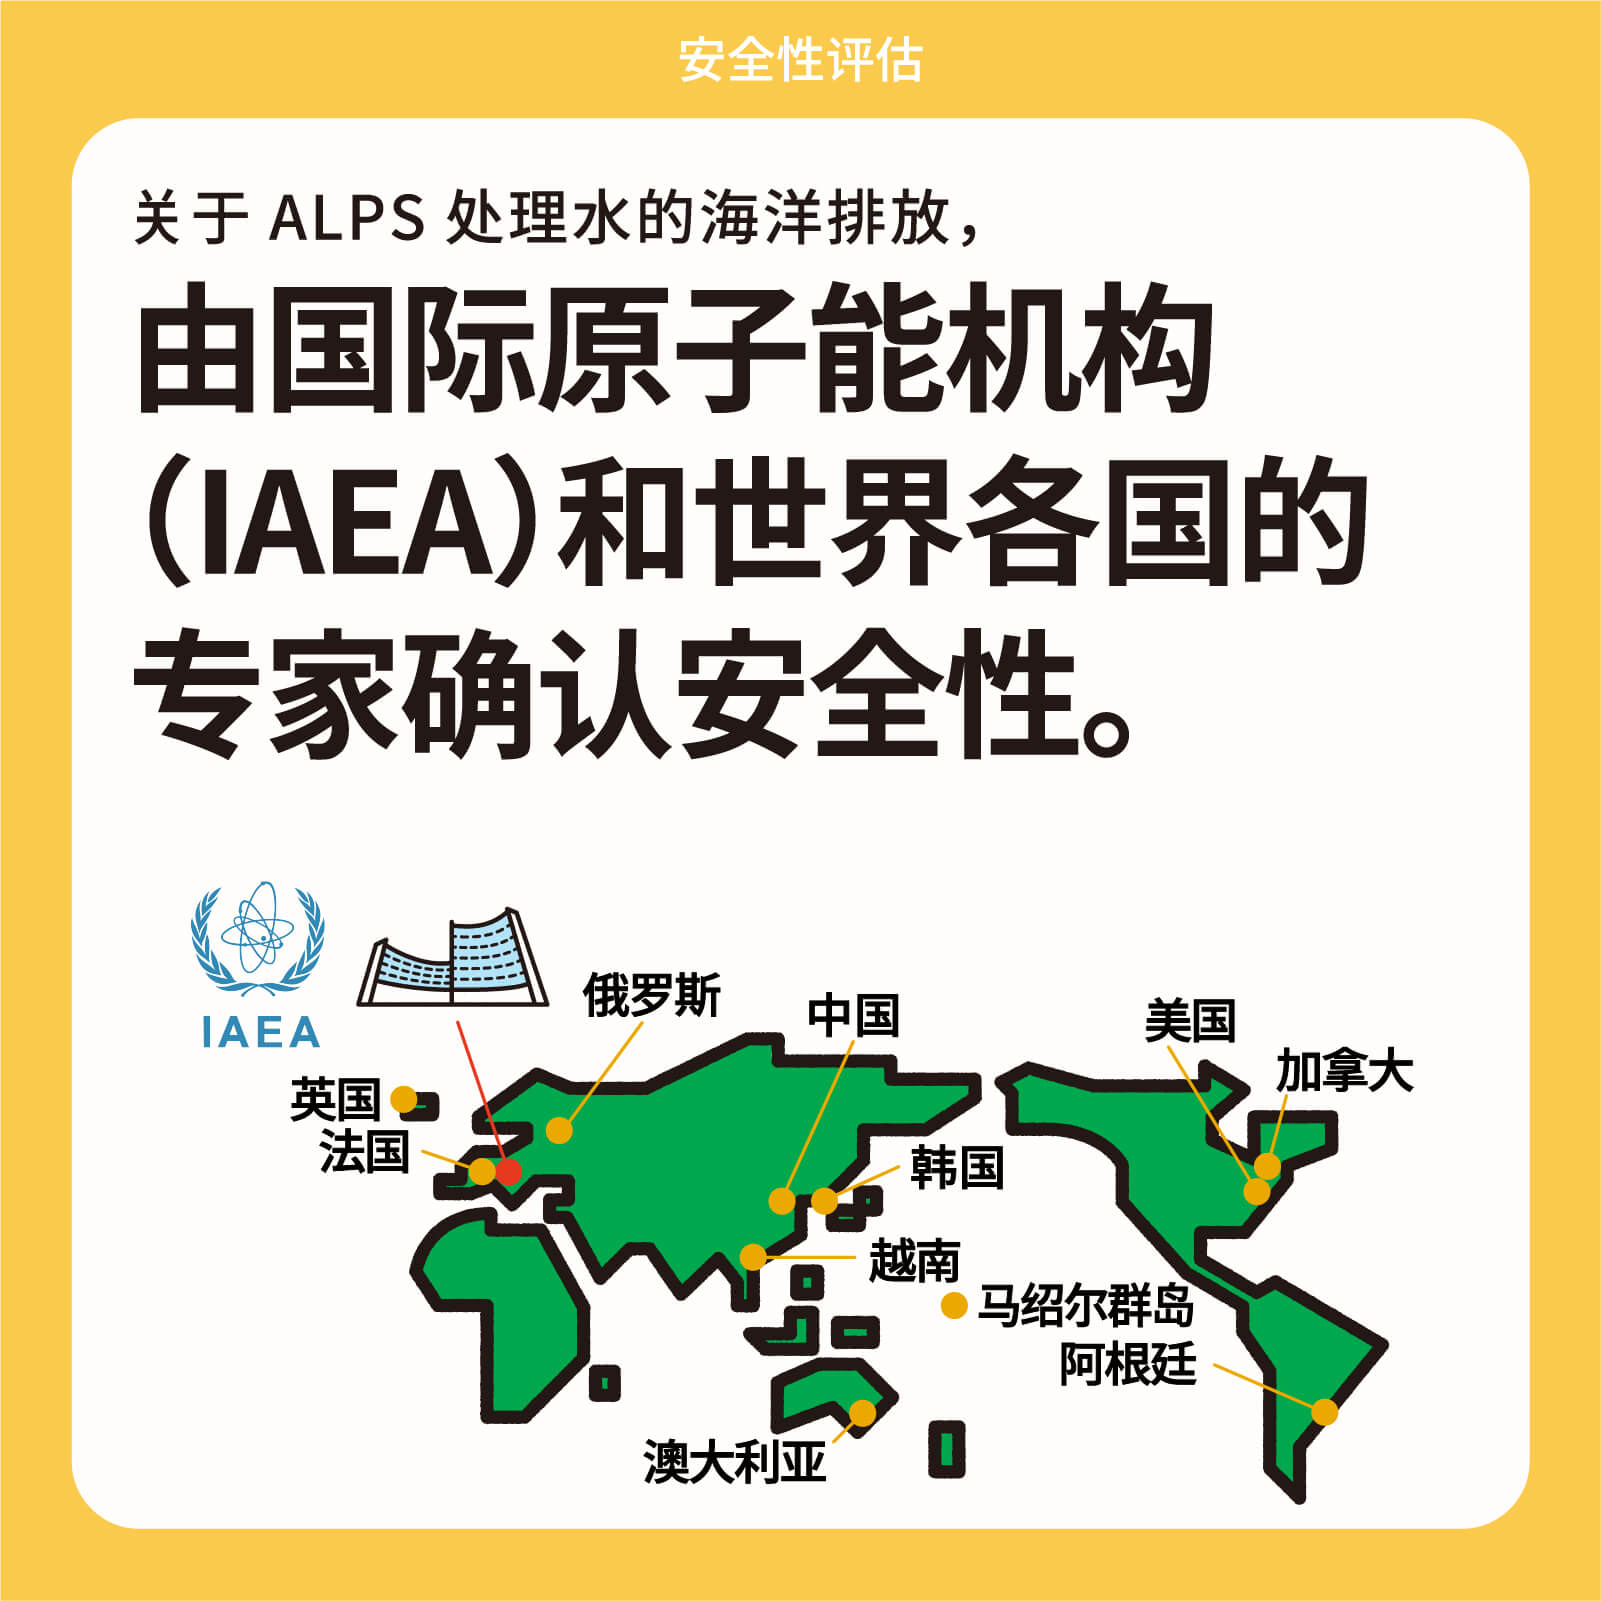 关于ALPS处理水的海洋排放，由国际原子能机构（IAEA）和世界各国的 专家确认安全性。